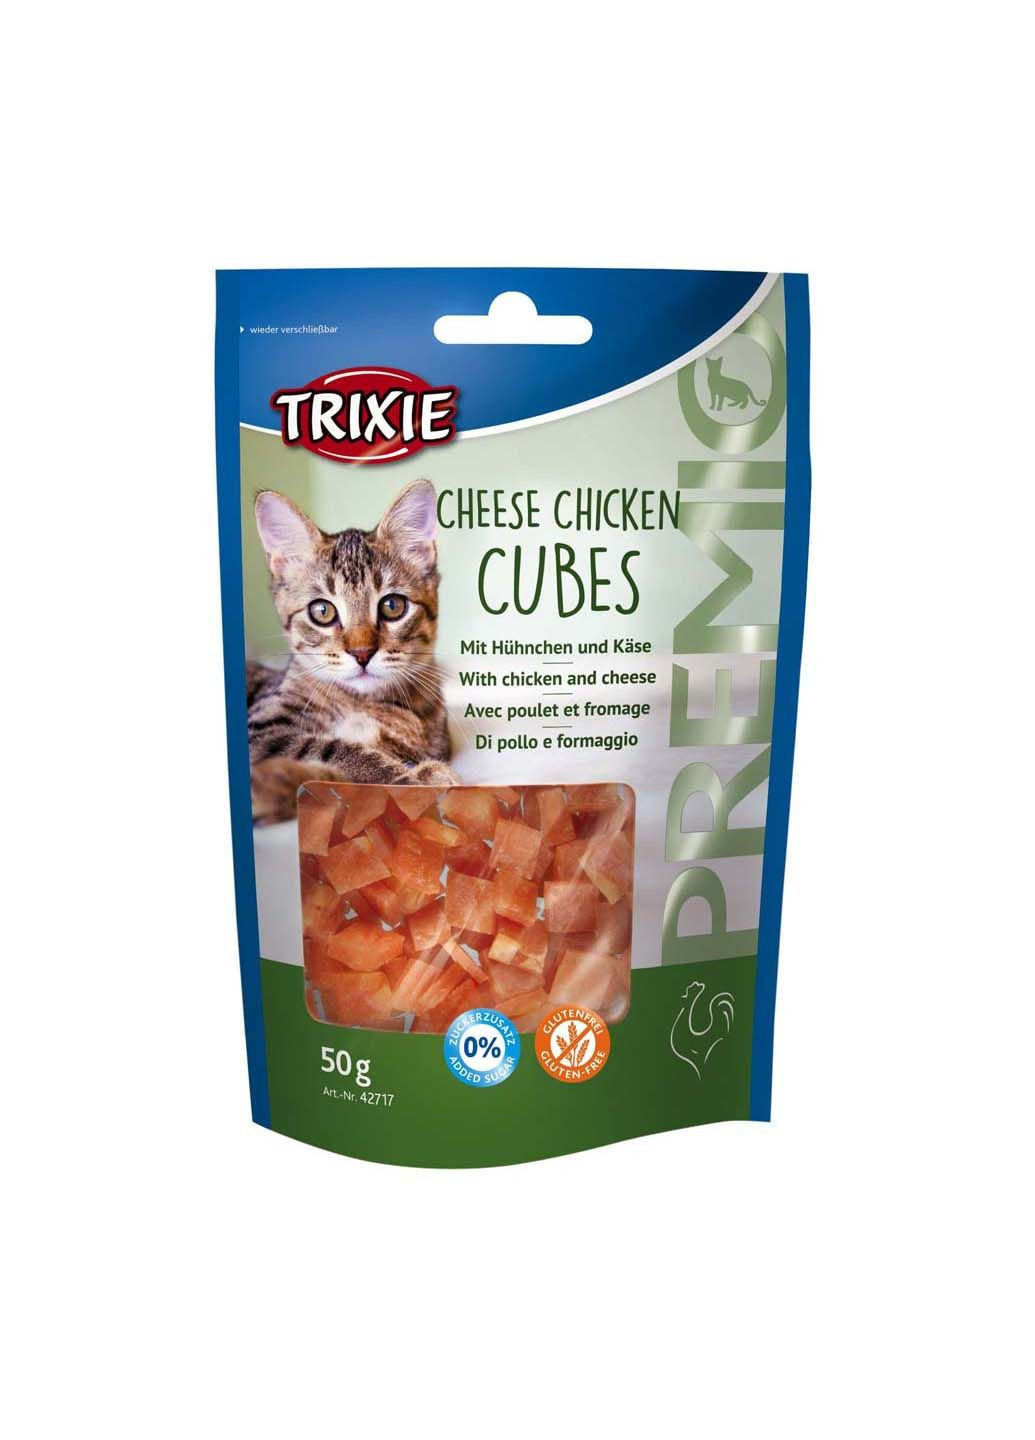 Лакомство для кошек 42717 Premio Cheese Chicken Cubes сырно-куриные кубики 50 г Trixie (285779001)